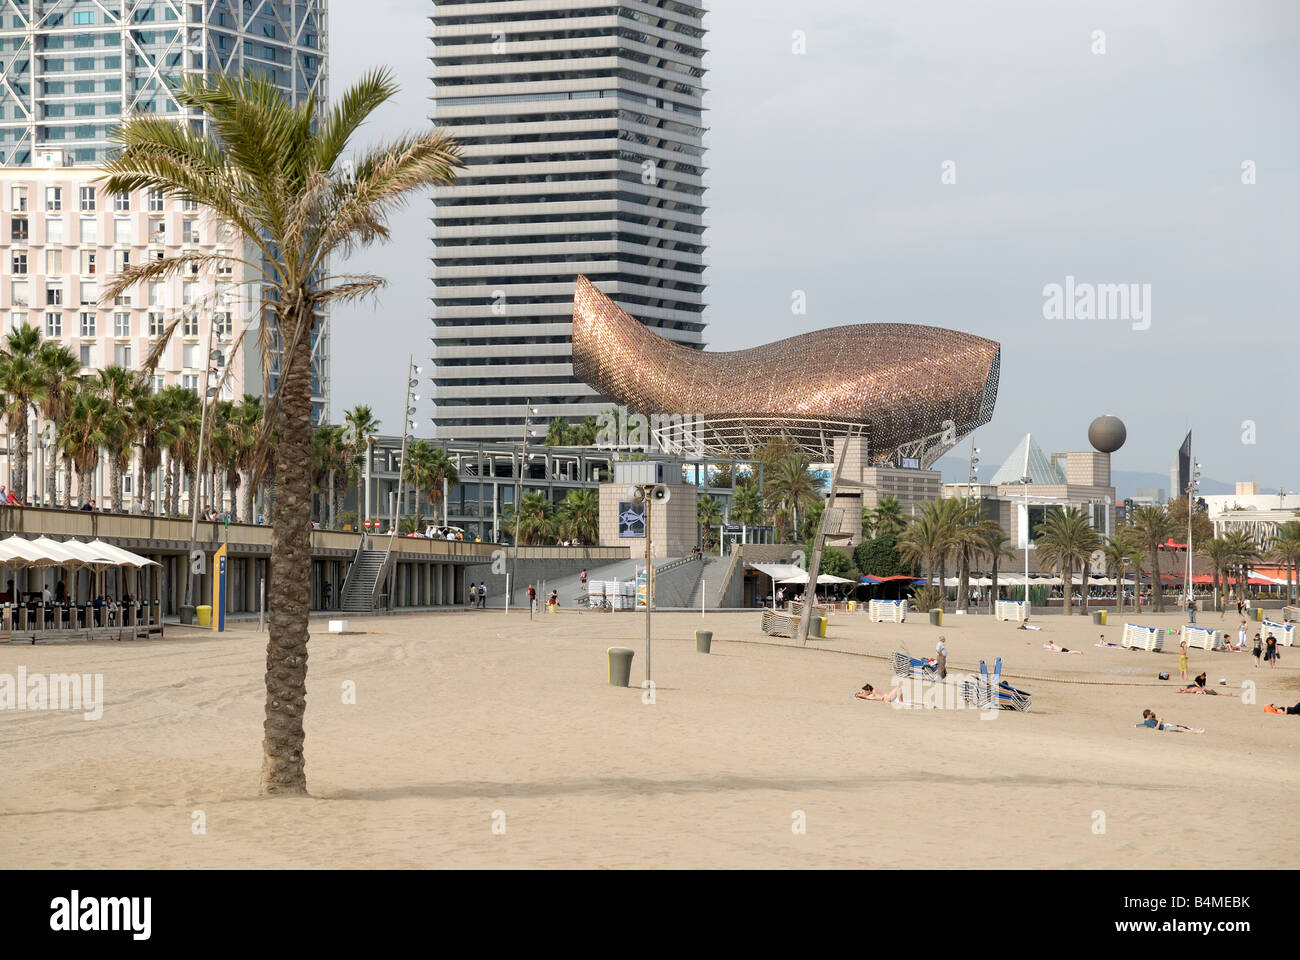 Frank Gery whale sculpture sur la plage de Barcelone Espagne Banque D'Images